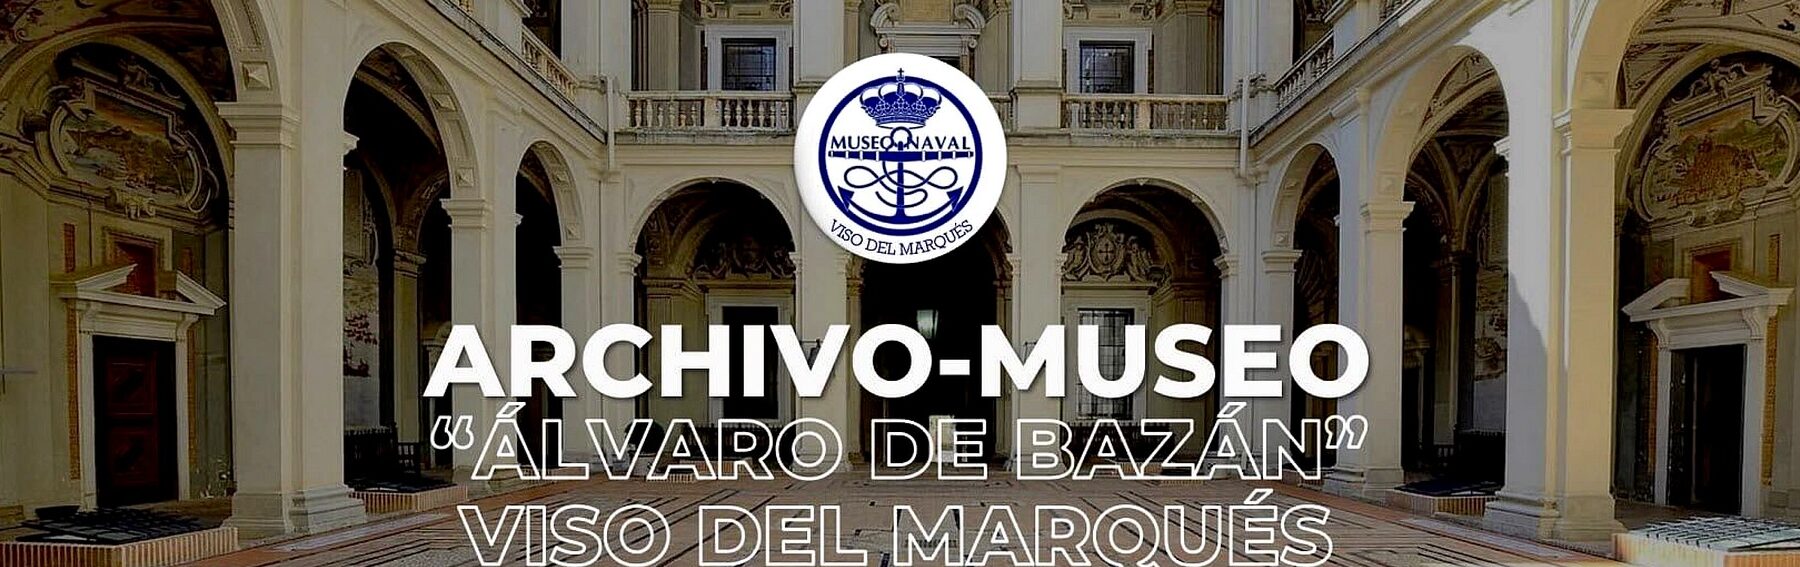 ARCHIVO-MUSEO DON ÁLVARO DE BAZÁN		Viso del Marqués	Ciudad Real	Museo